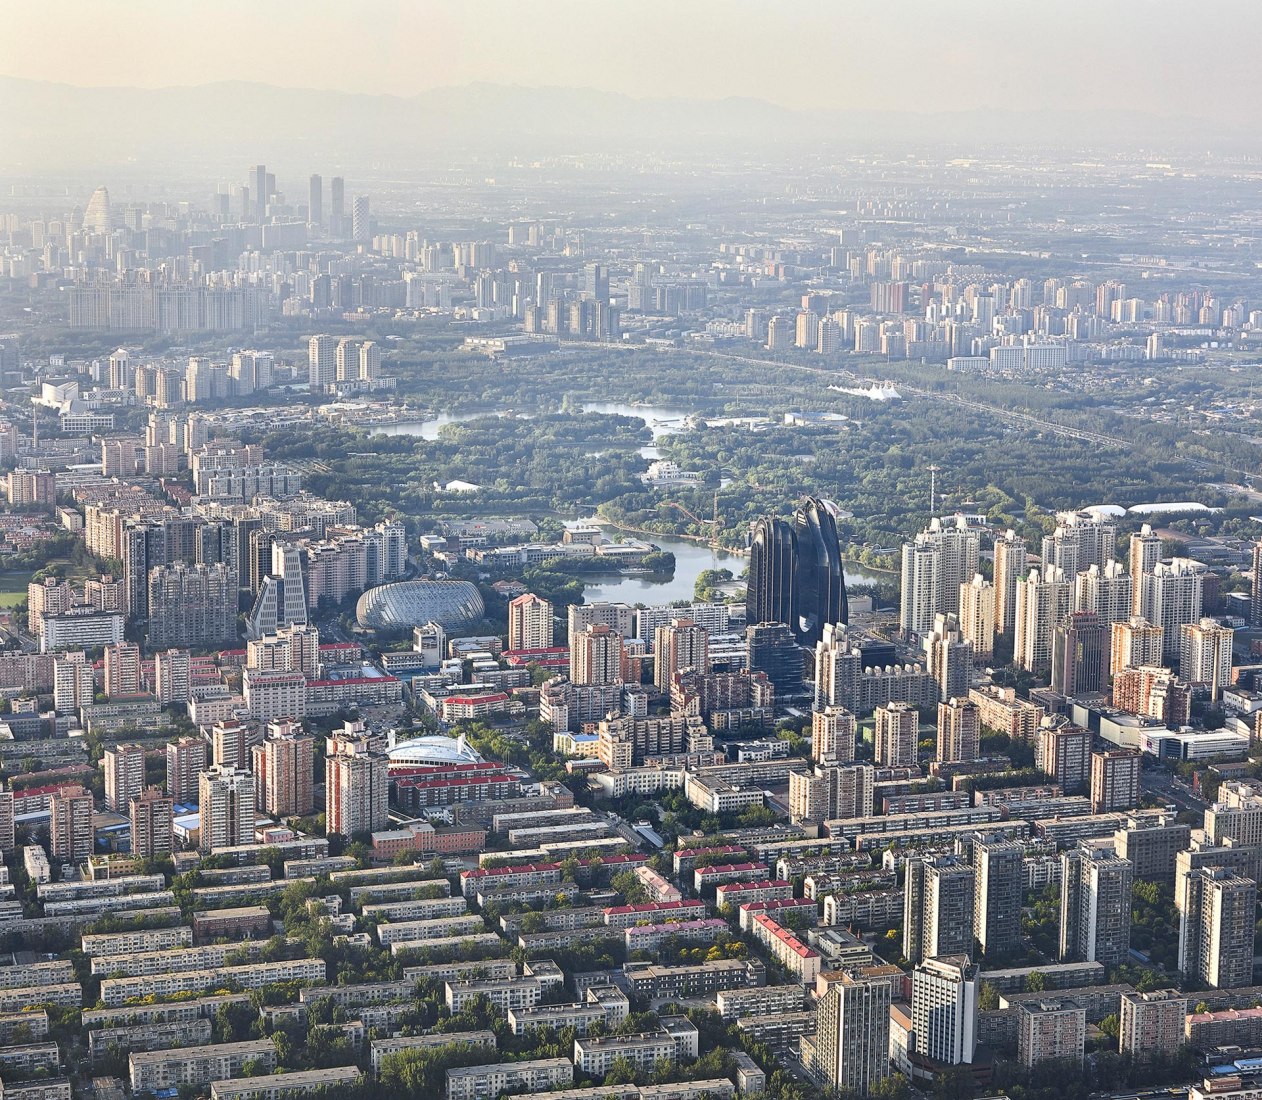 Vista de pajaro de la ciudad. Chaoyang Park Plaza en Pekín por MAD Architects. Fotografía © Hufton+Crow